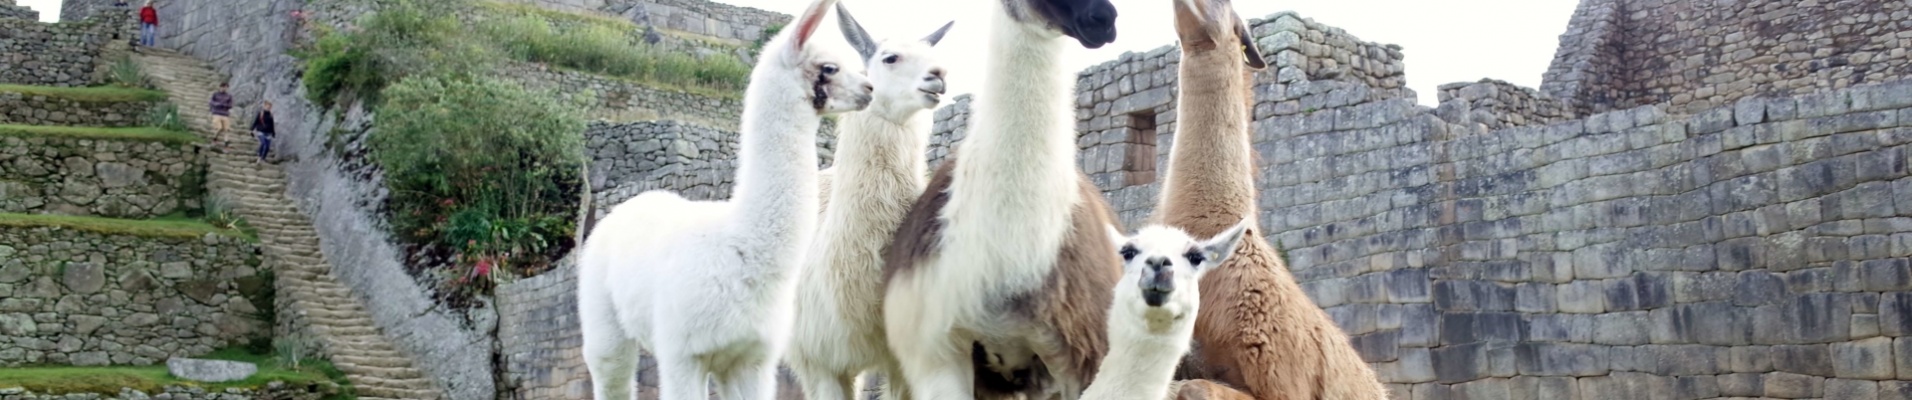 Famille de Lamas sur le Machu Picchu, Pérou